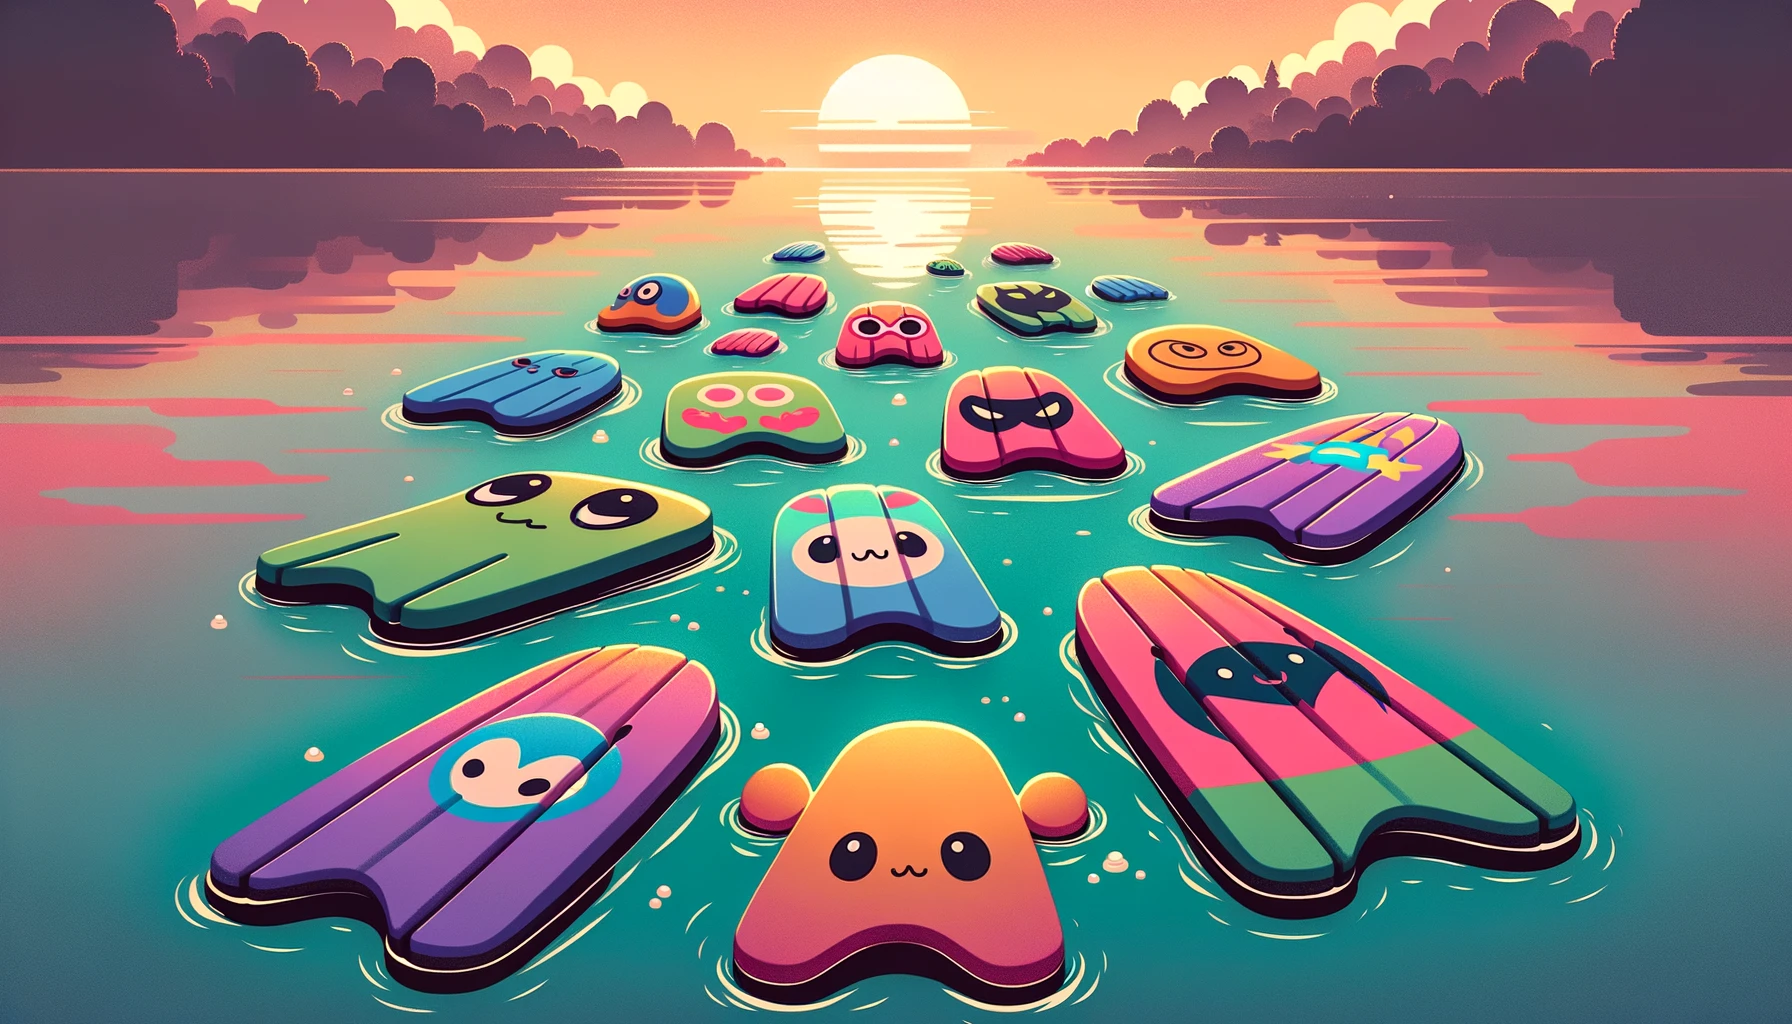 Illustration einer Sammlung von schwimmenden Kickboards im Cartoon-Stil, die auf einem ruhigen See bei Sonnenuntergang schwimmen.